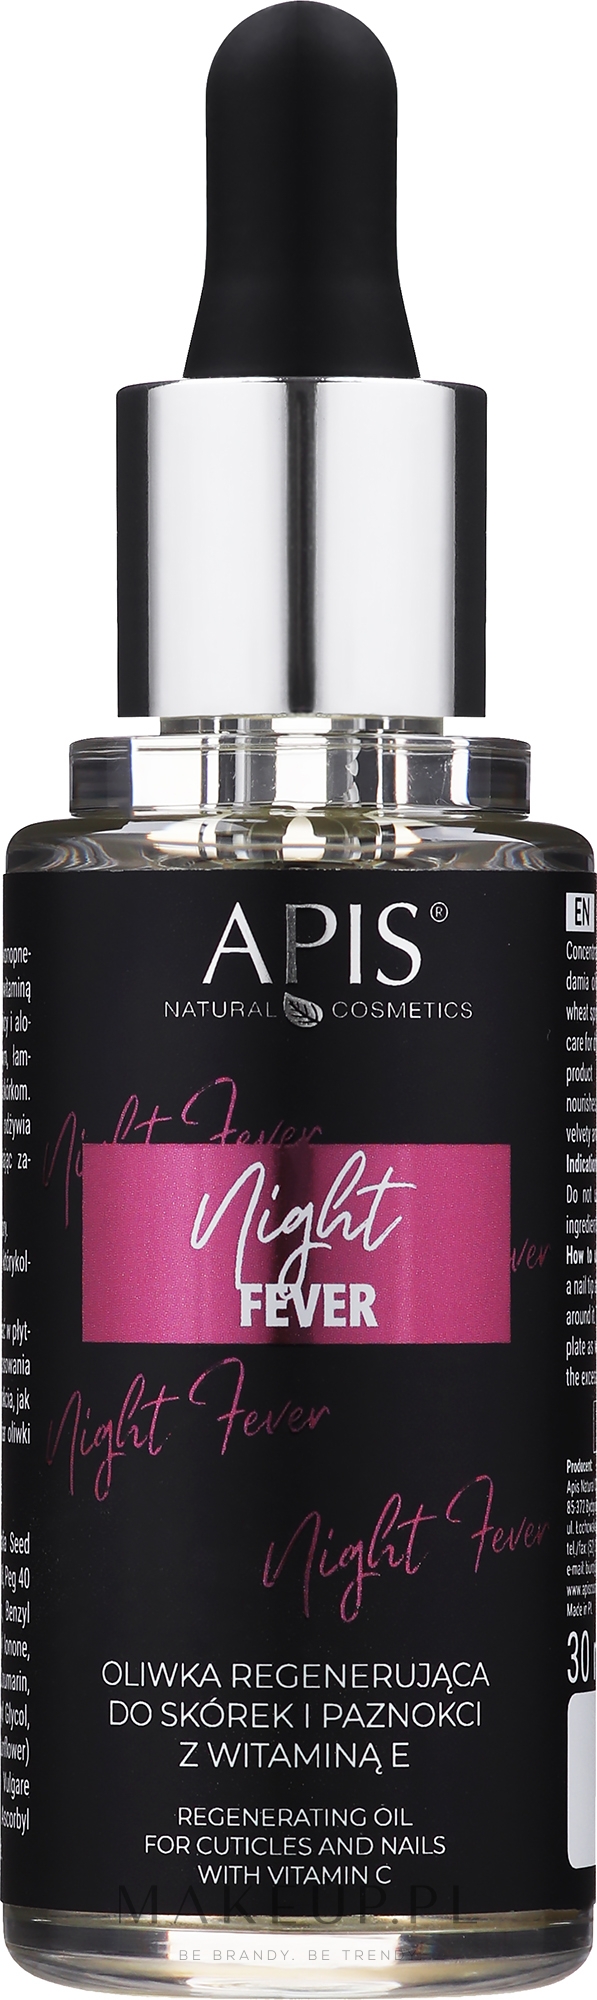 Regenerujący olejek do skórek i paznokci z witaminą E - Apis Night Fever Regenerating Oil For Cuticles & Nails — Zdjęcie 30 ml